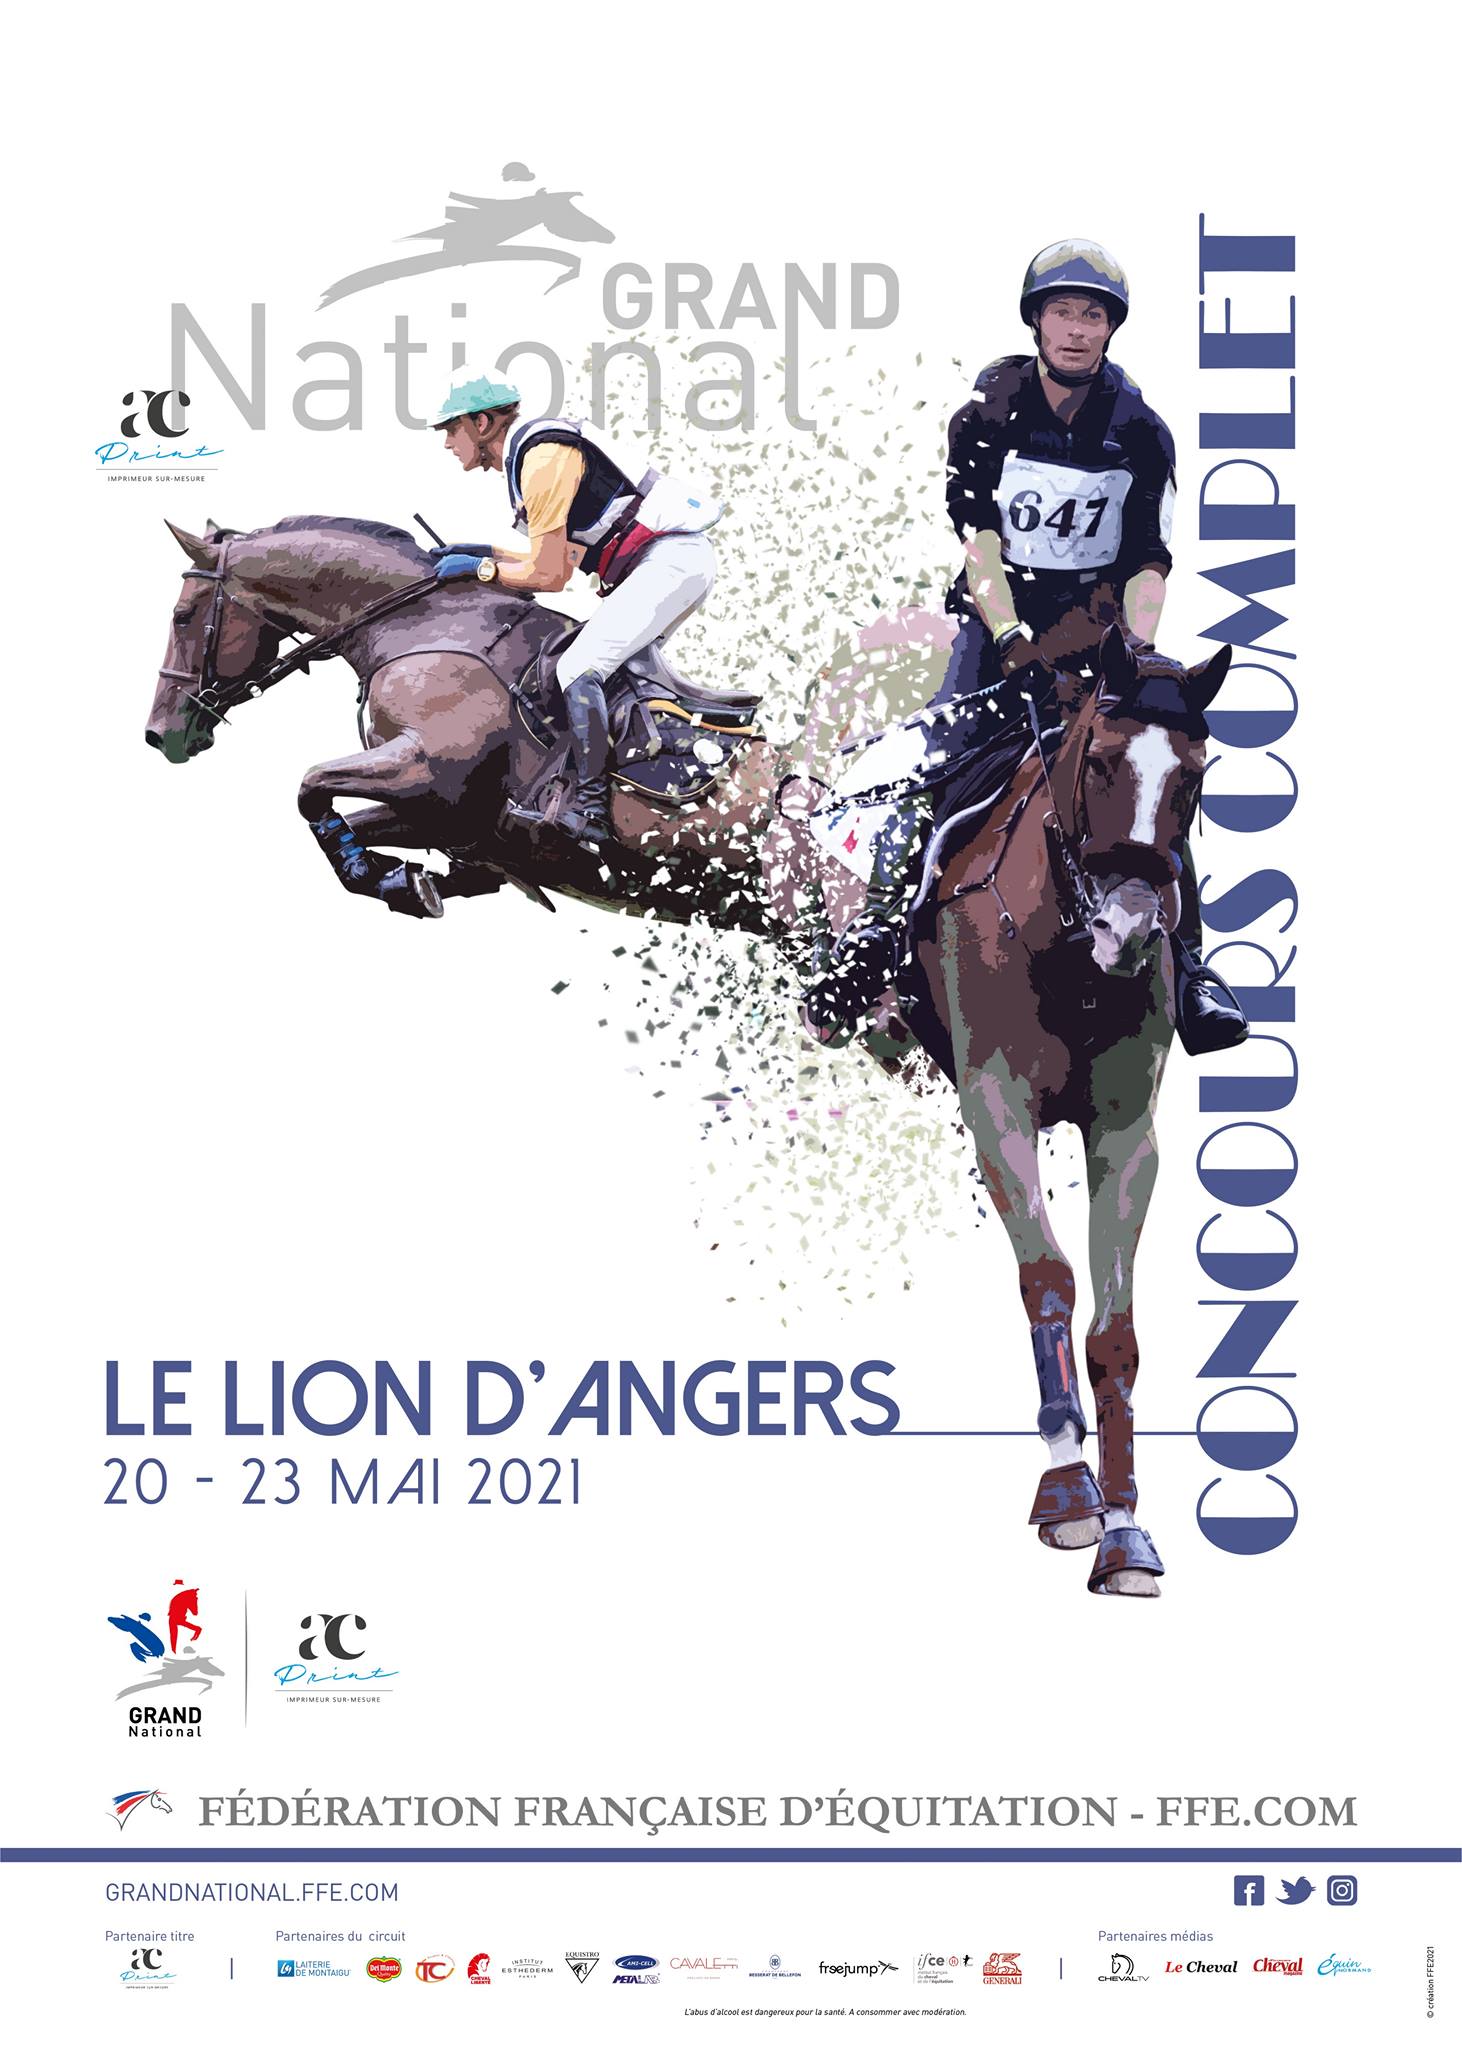 Le grand national de concours complet fait étape au Lion d'Angers